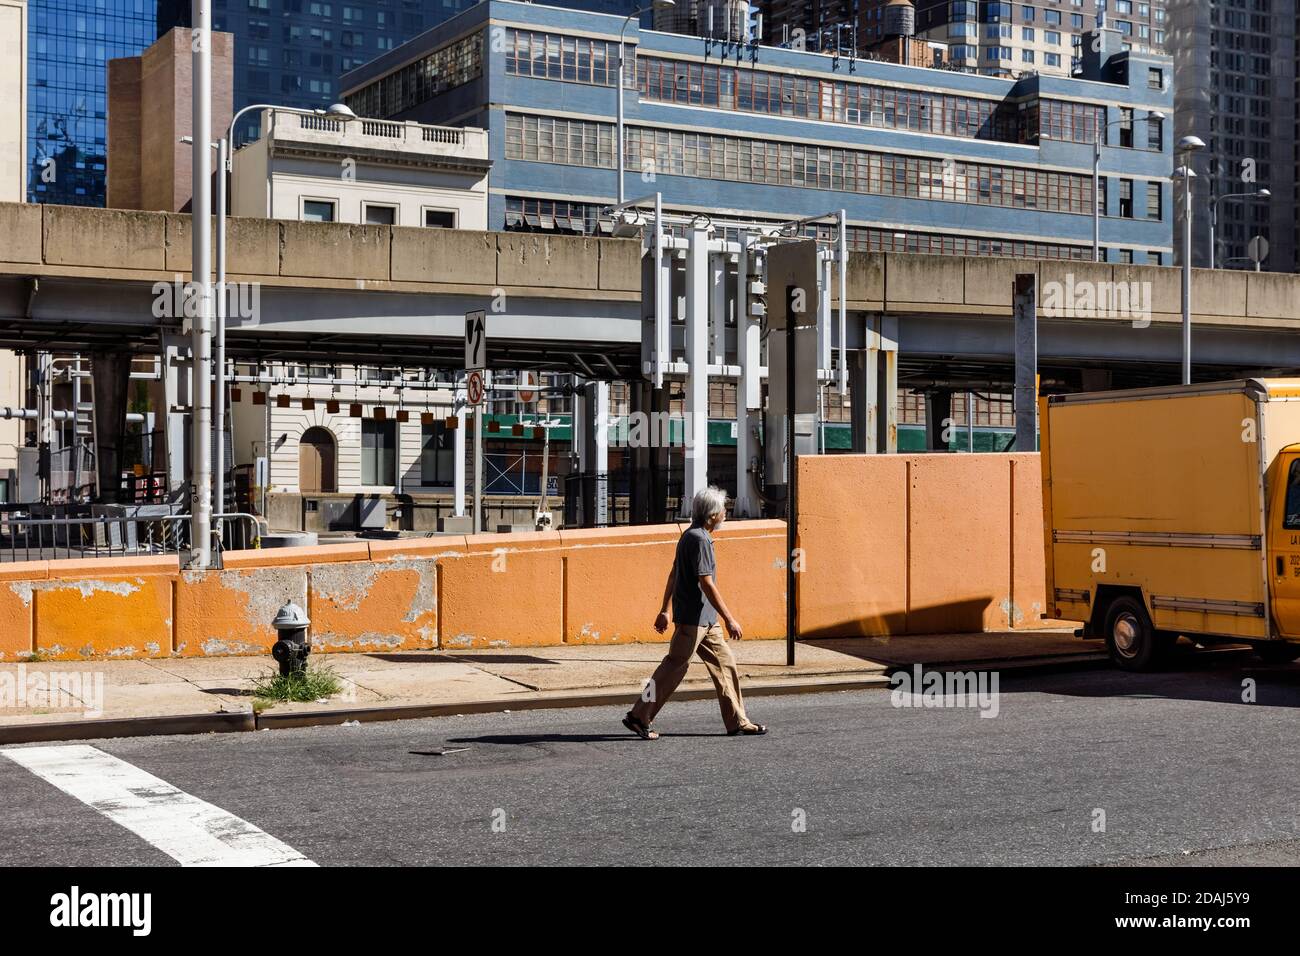 New York, Stati Uniti d'America - 23 settembre 2017: Scena di Manhattan Street. L'uomo OLS cammina lungo una recinzione gialla in cemento per le strade di Manhattan a New York City Foto Stock